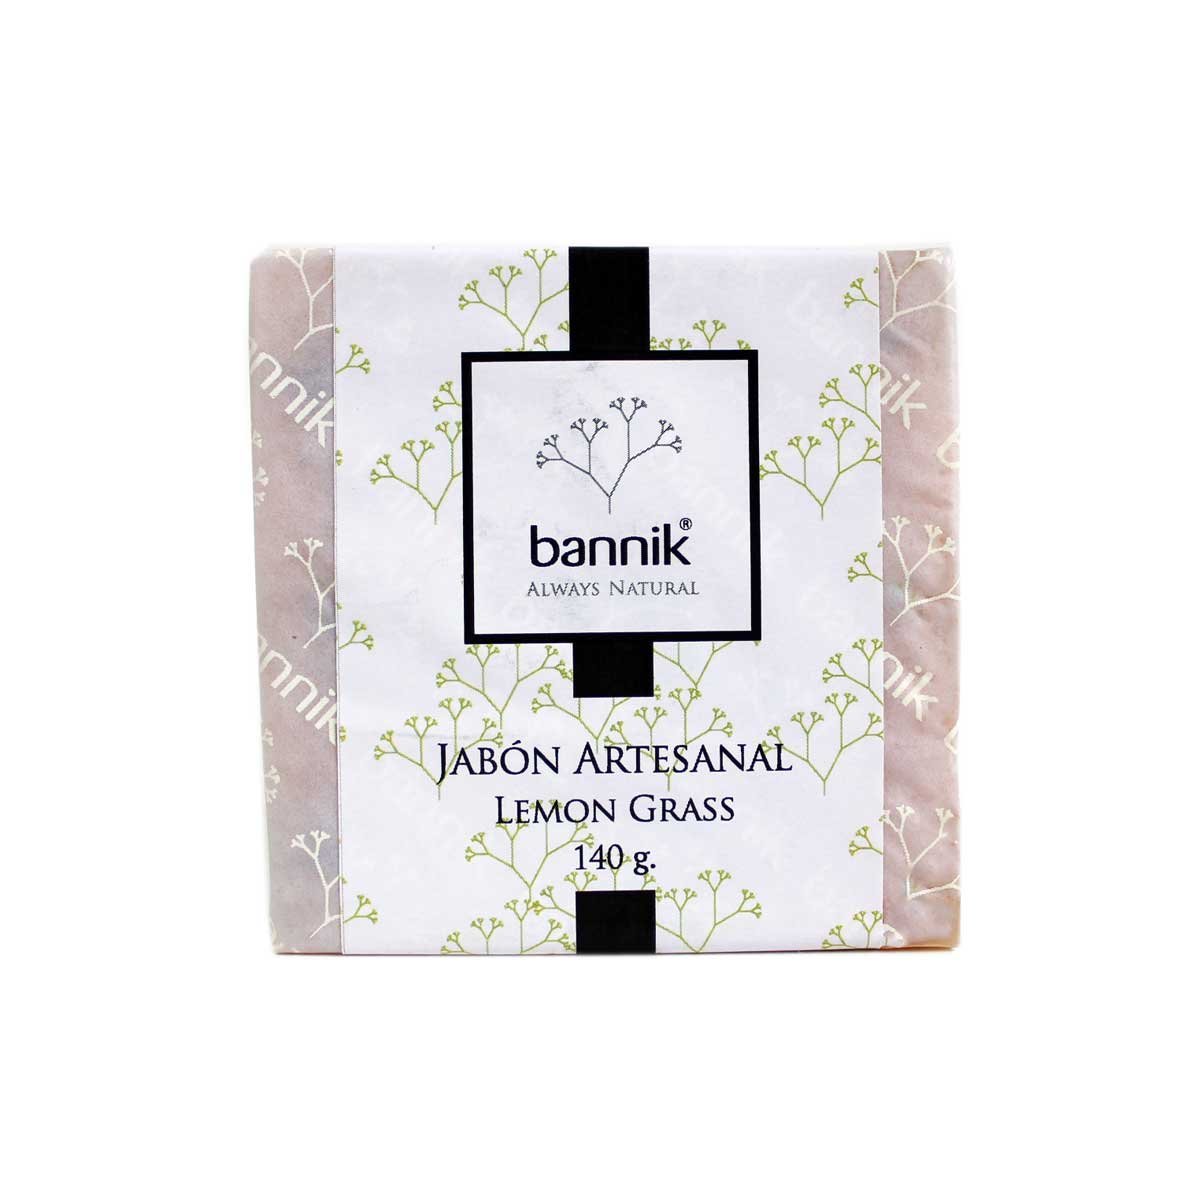 Jab N Artesanal Lemon Grass Bannik